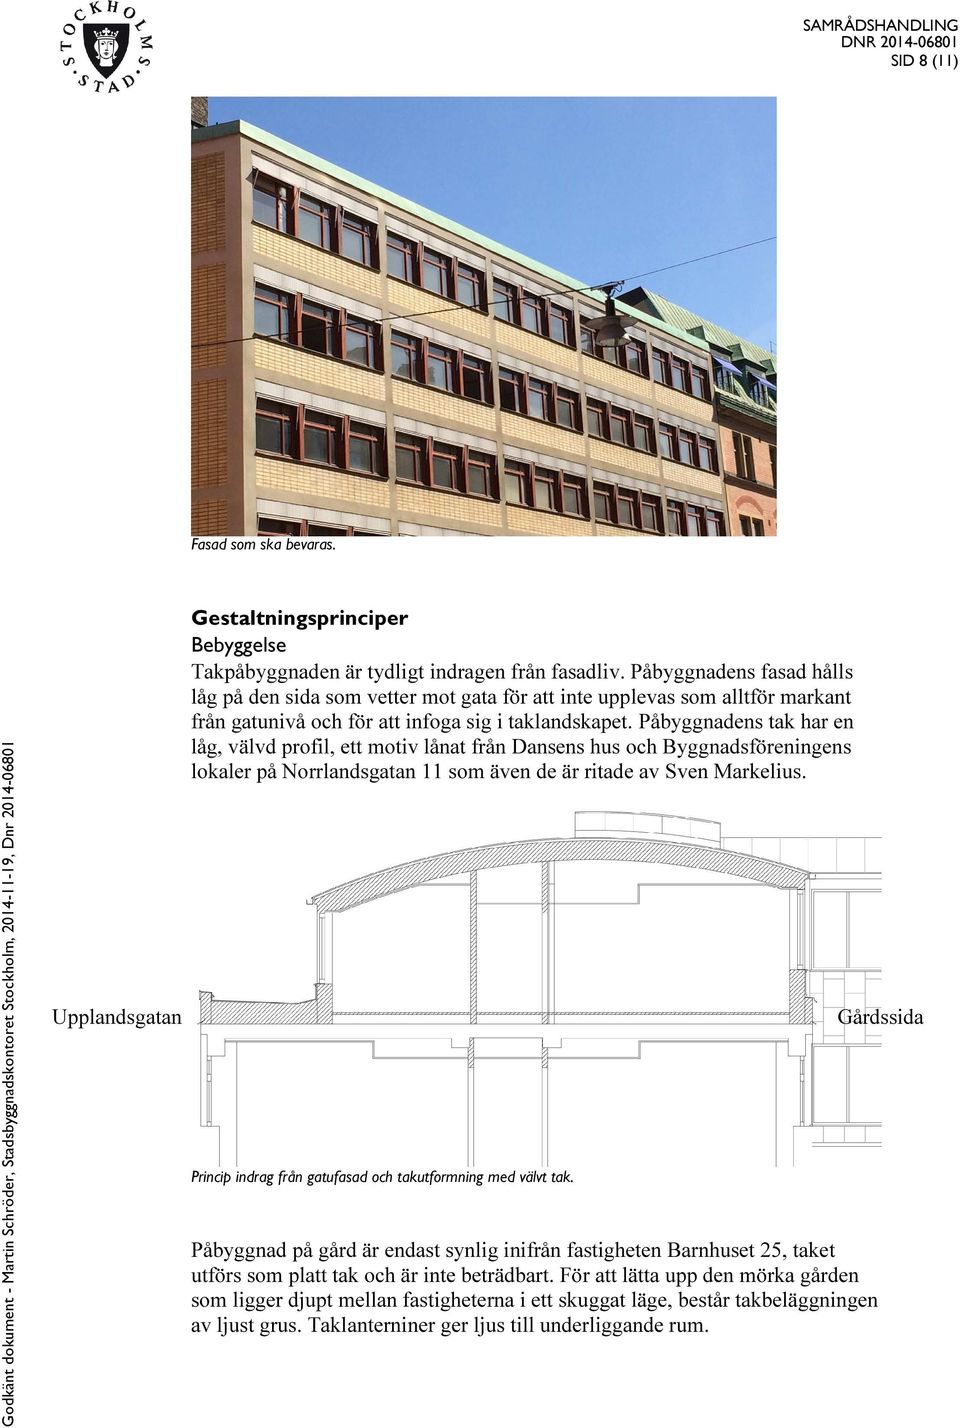 Påbyggnadens tak har en låg, välvd profil, ett motiv lånat från Dansens hus och Byggnadsföreningens lokaler på Norrlandsgatan 11 som även de är ritade av Sven Markelius.